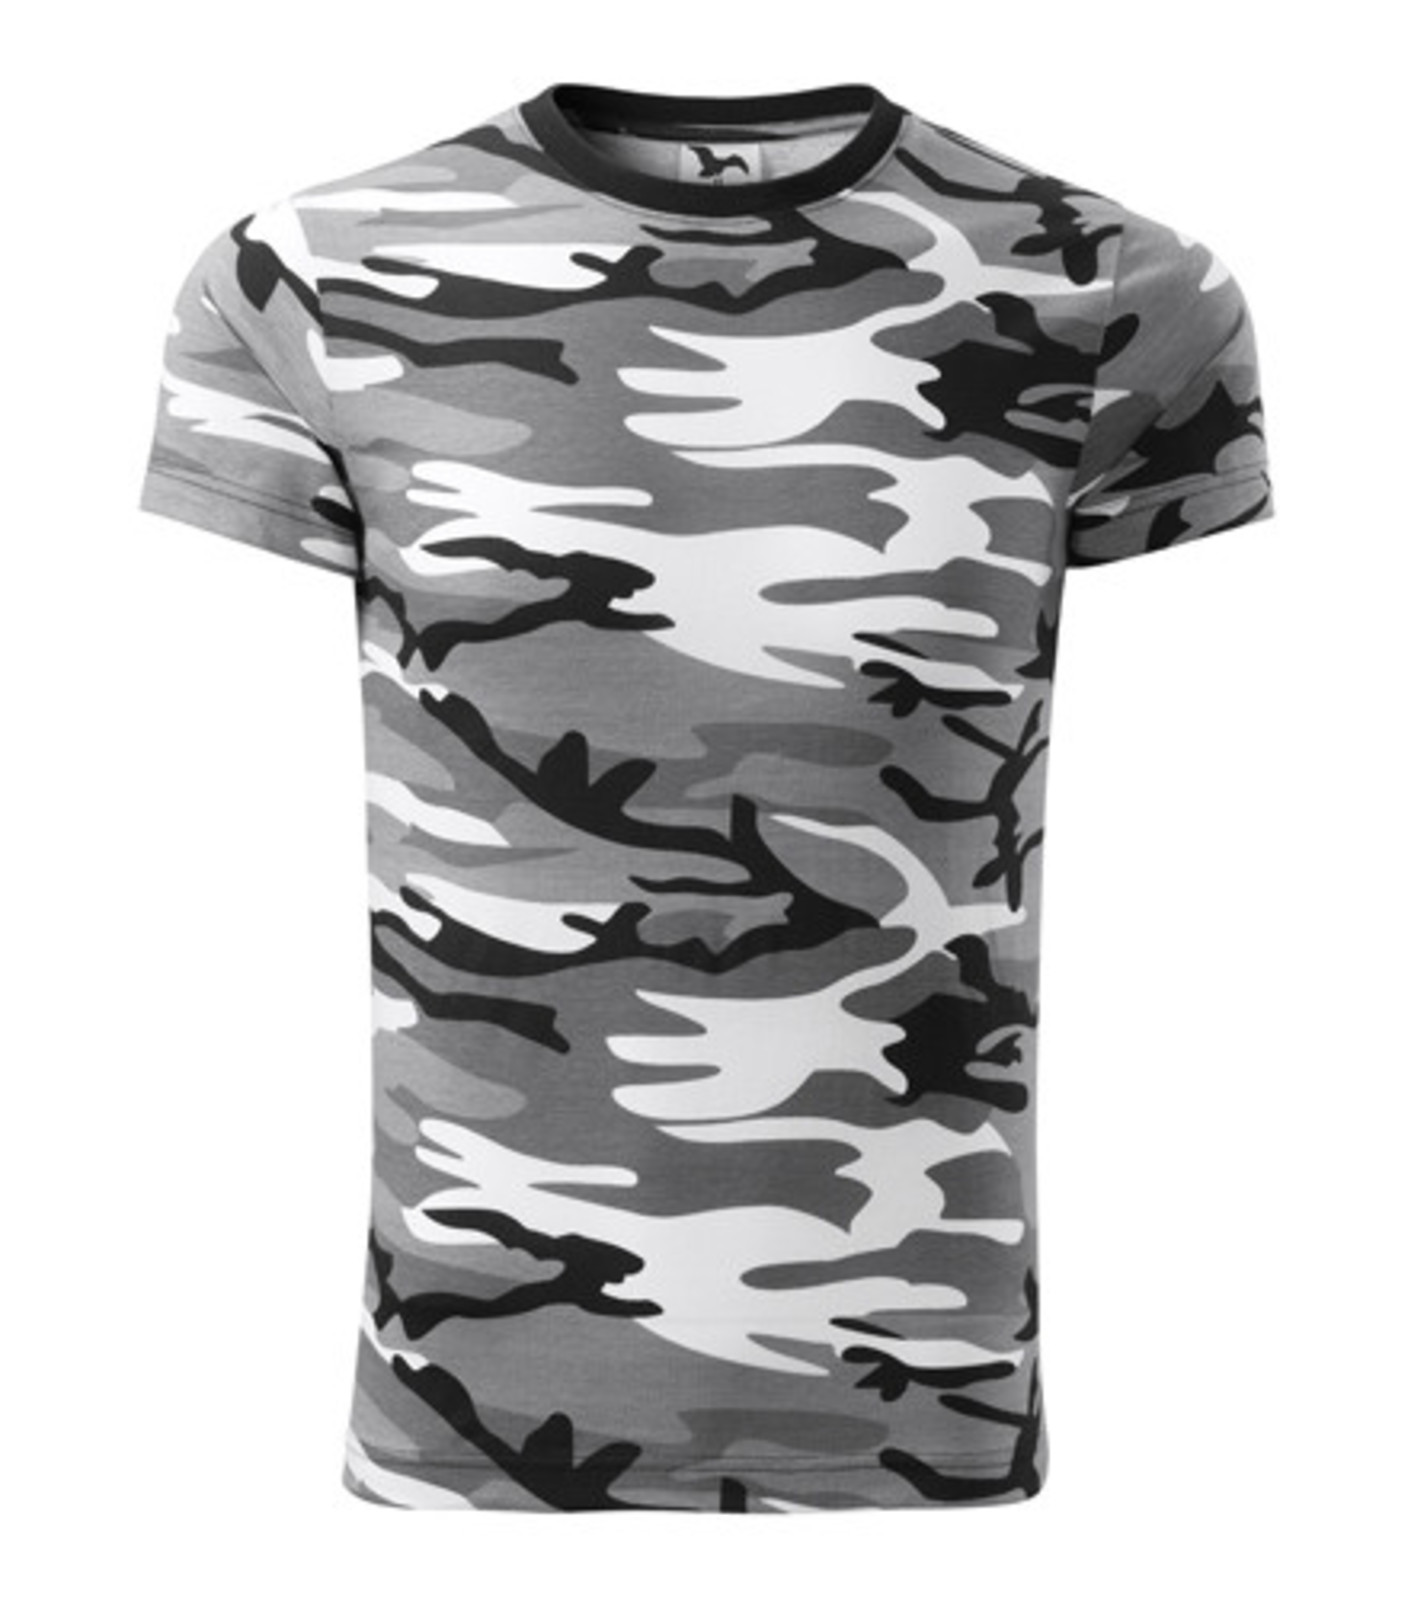 Maskáčové tričko Adler Camouflage 144 - veľkosť: S, farba: maskáčová šedá